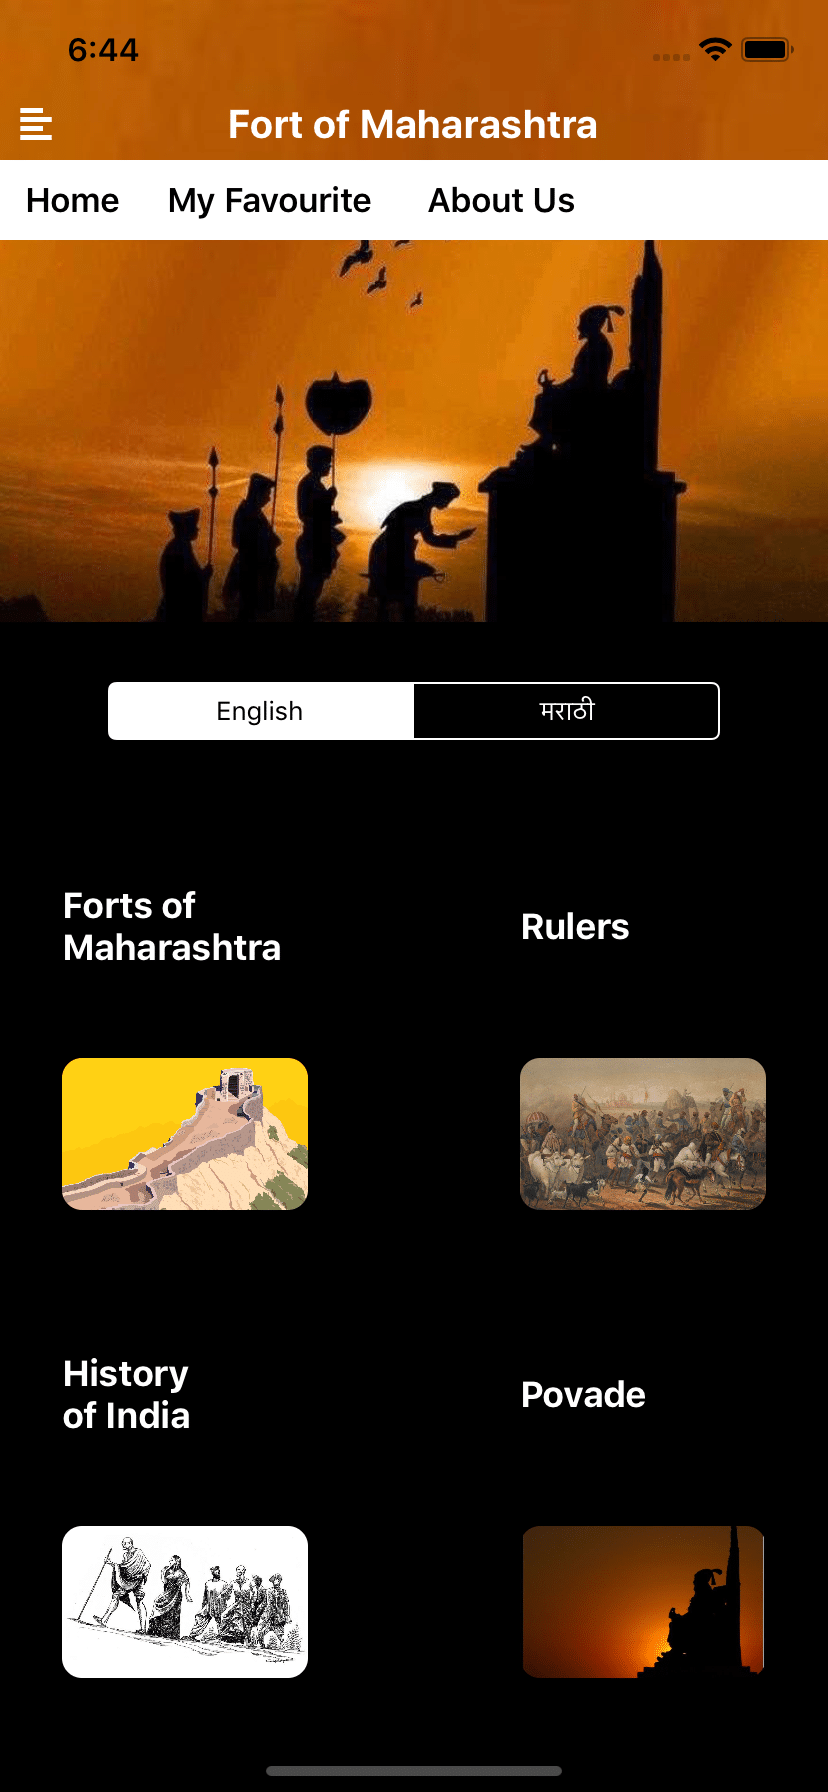 Fort-Of-Maharashtra